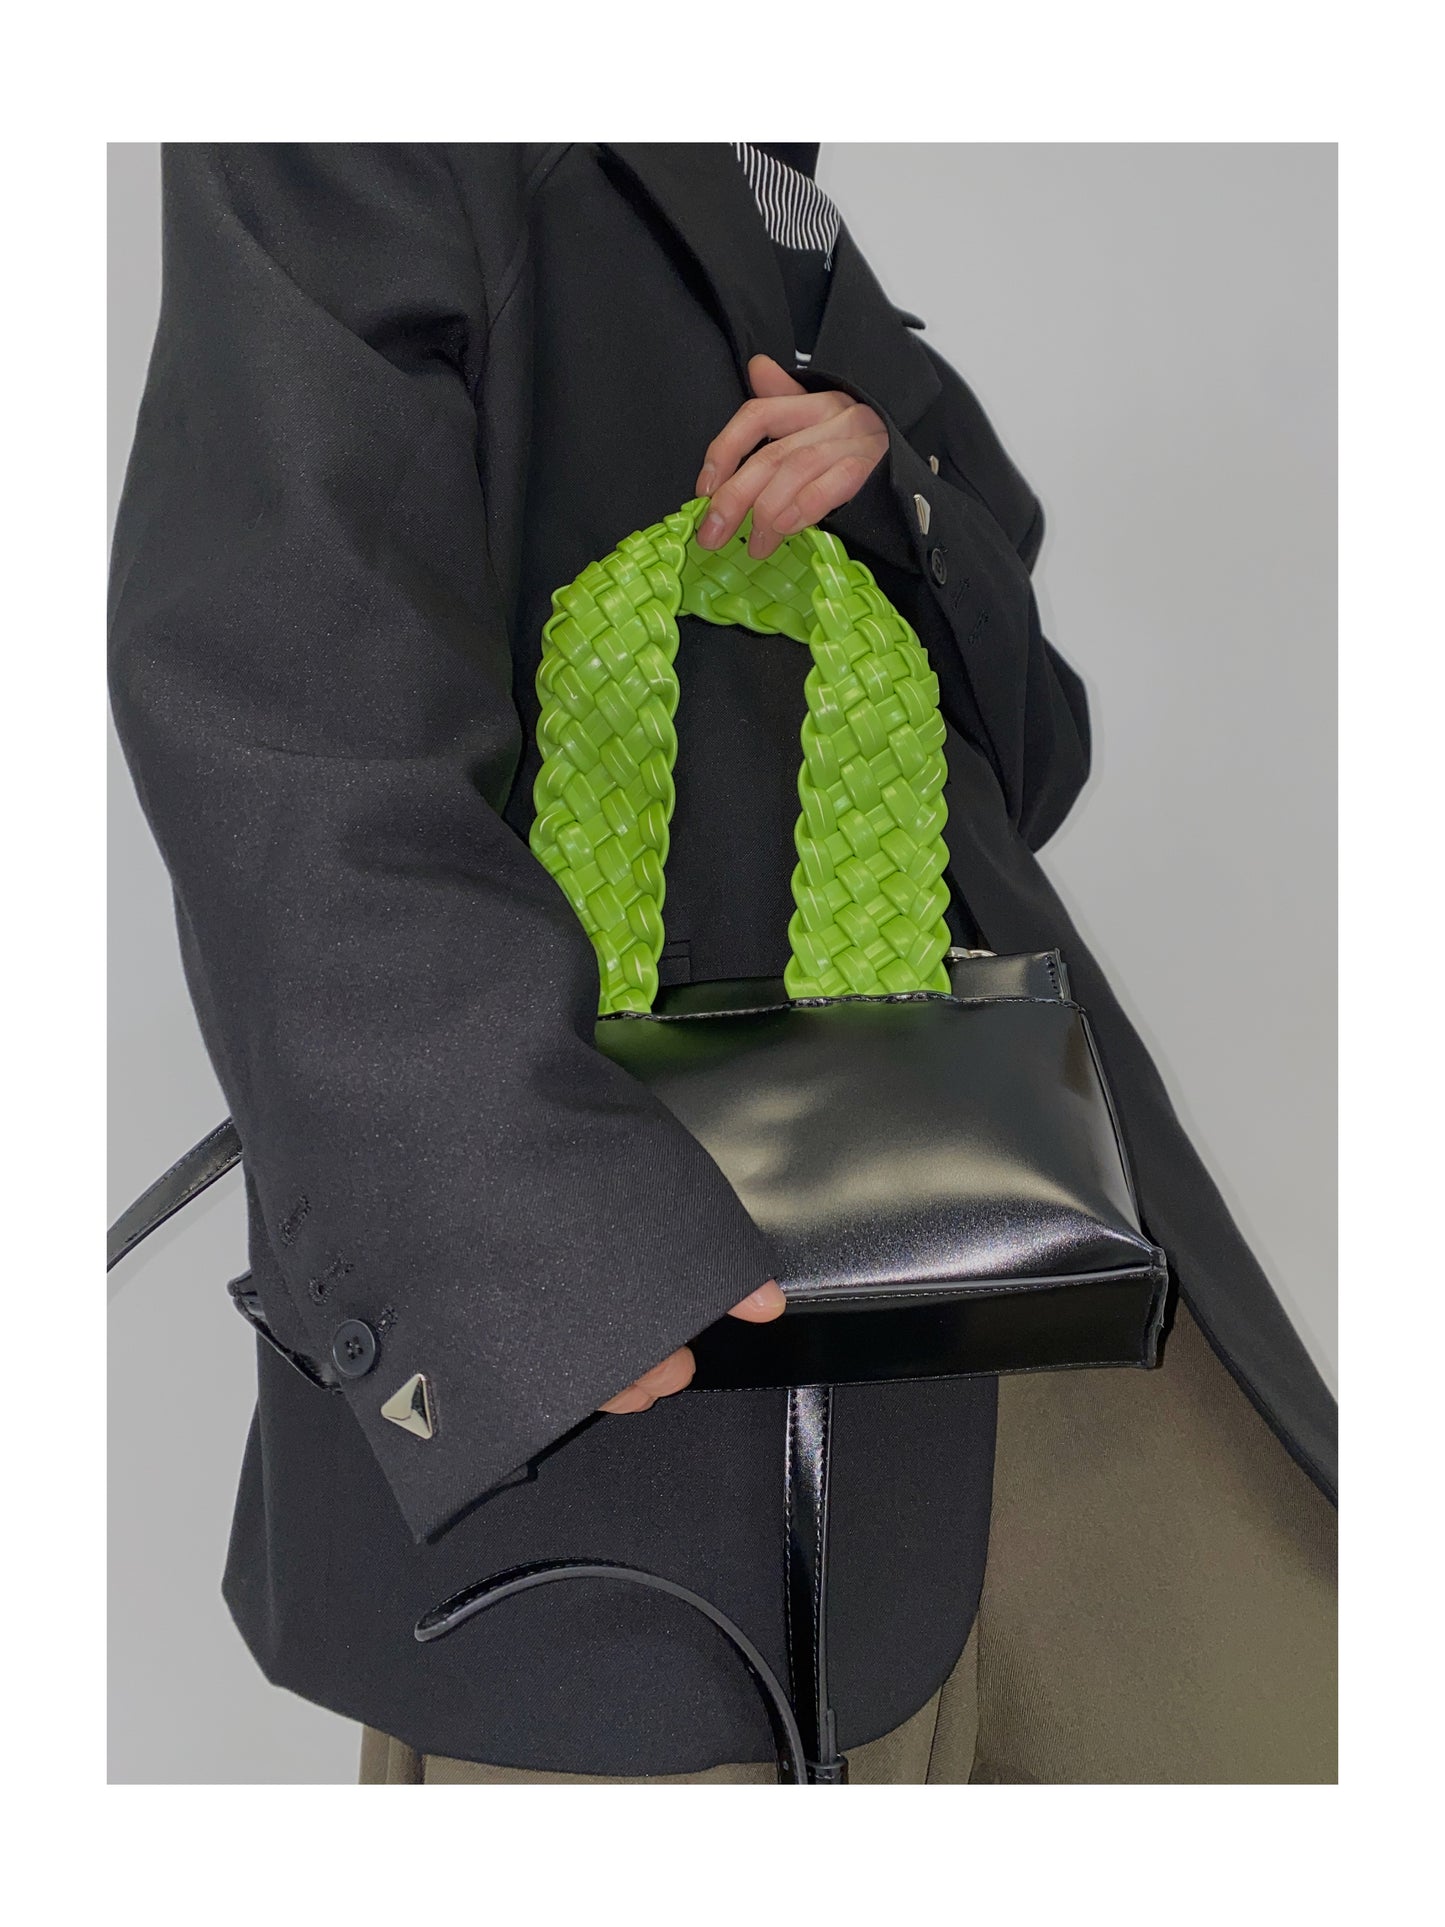 Portable Weaving + Shoulder Bag